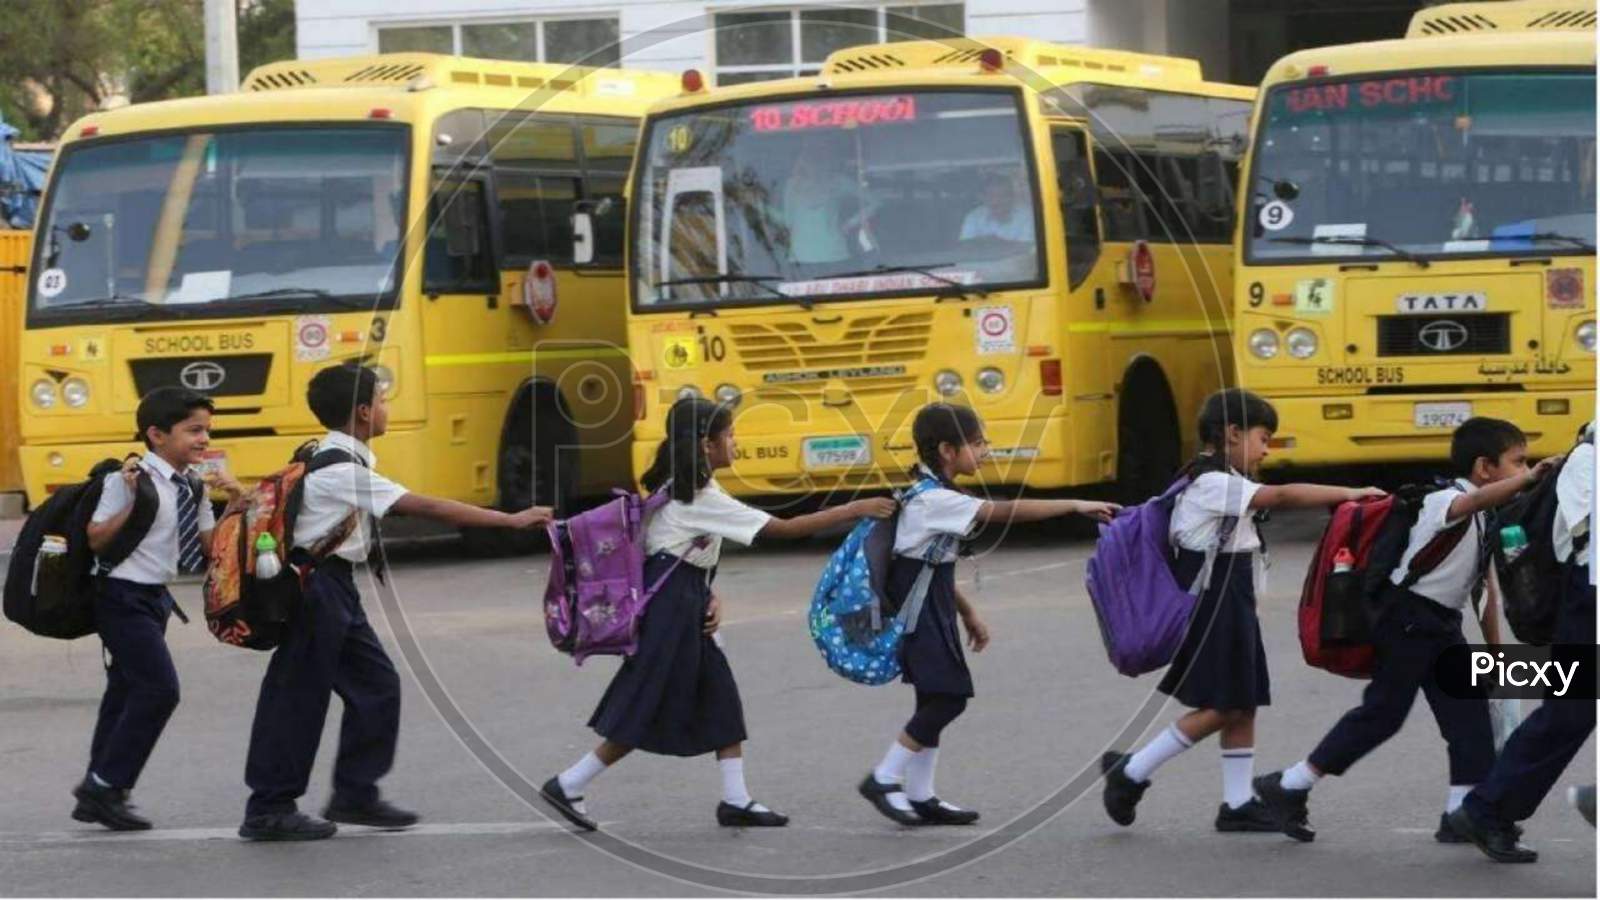 School reopen in india